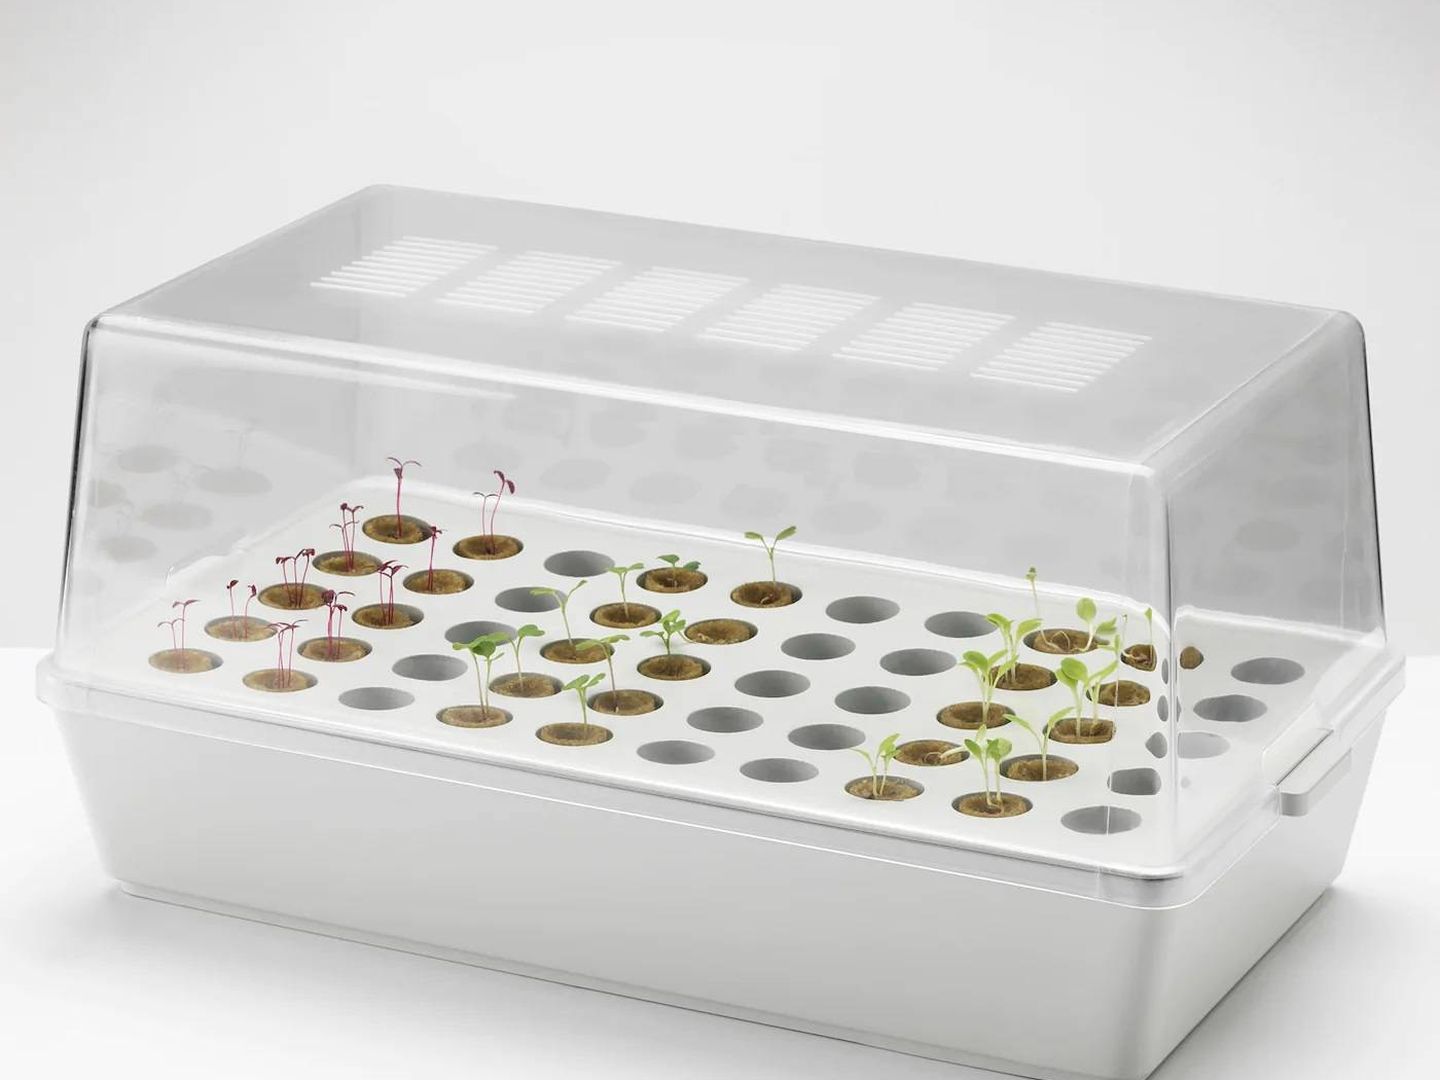 Con este semillero de Ikea podrás ver crecer tus plantas desde cero. (Cortesía)